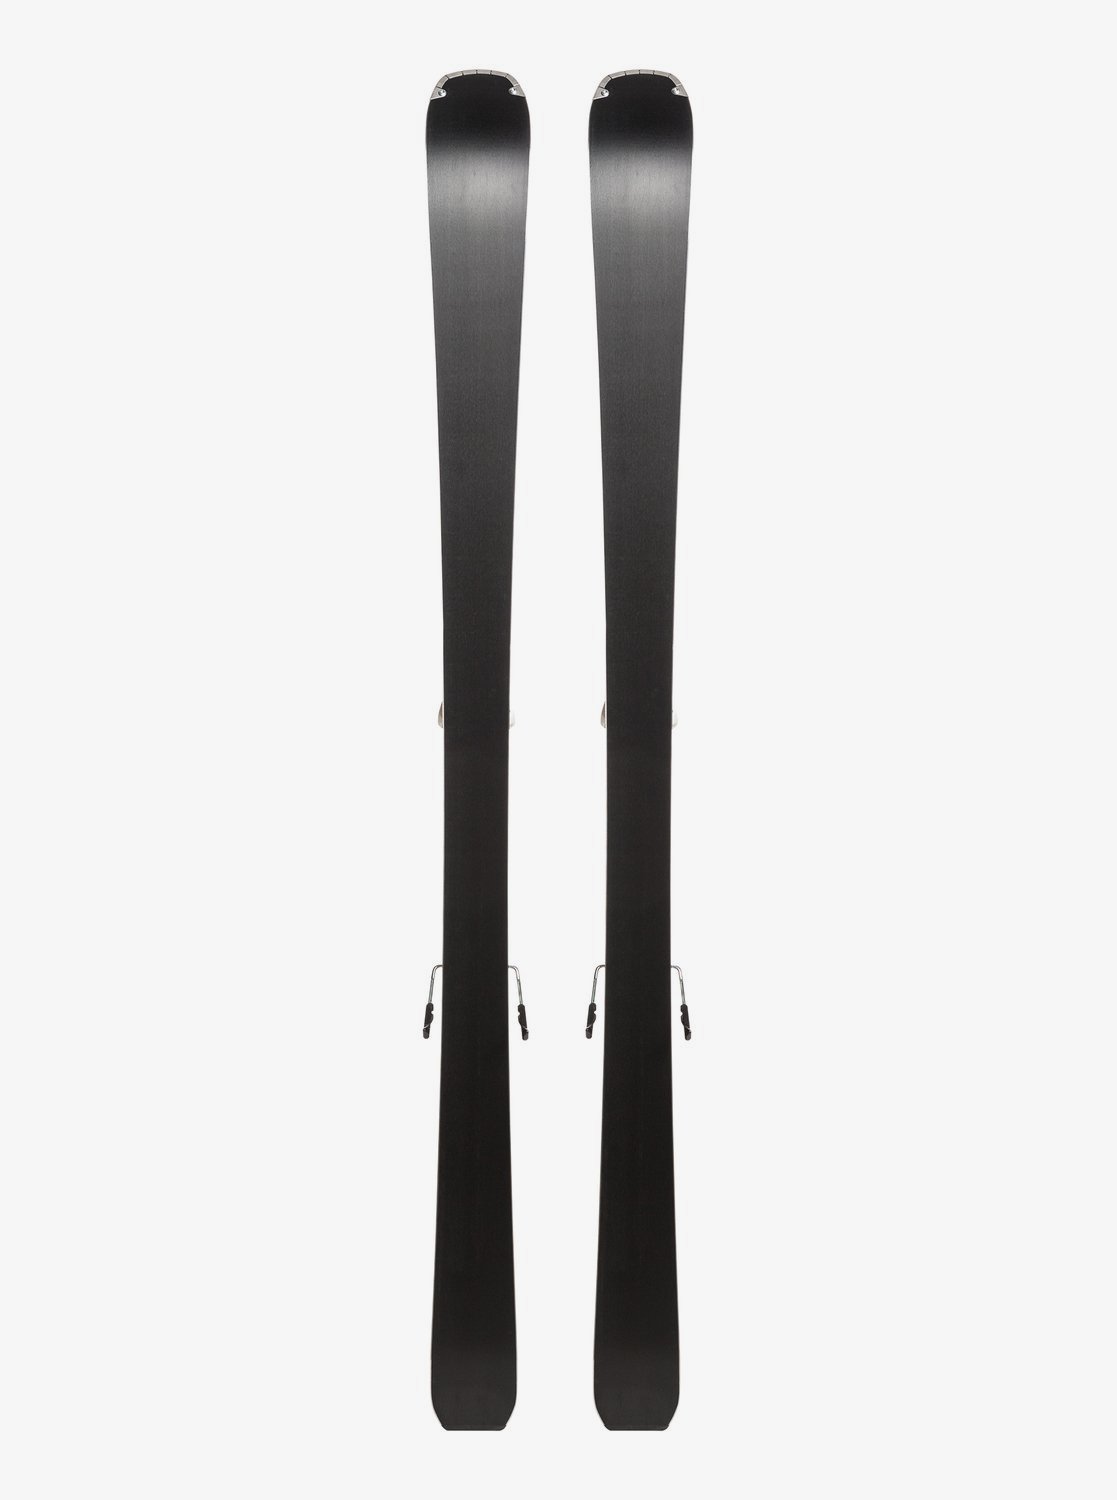 Горные лыжи с креплениями Roxy 2019-20 Dreamcatcher 75